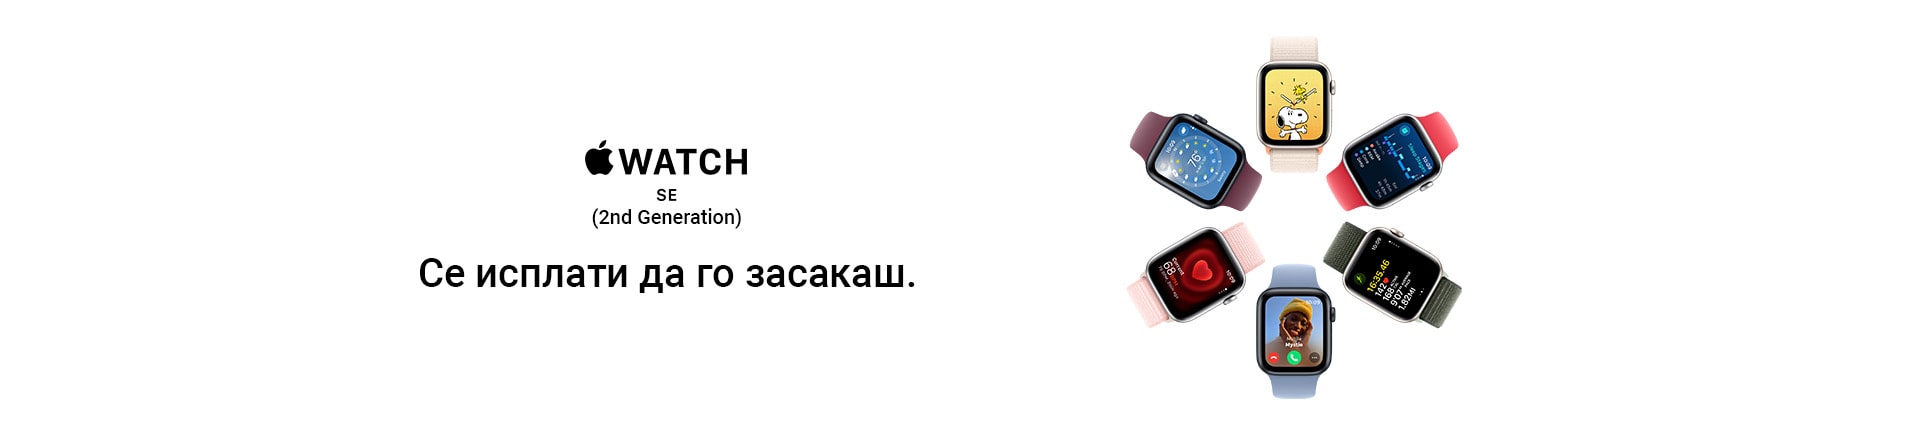 MK~Apple Watch SE2 MOBILE 380 X 436 LANDING-min.jpg